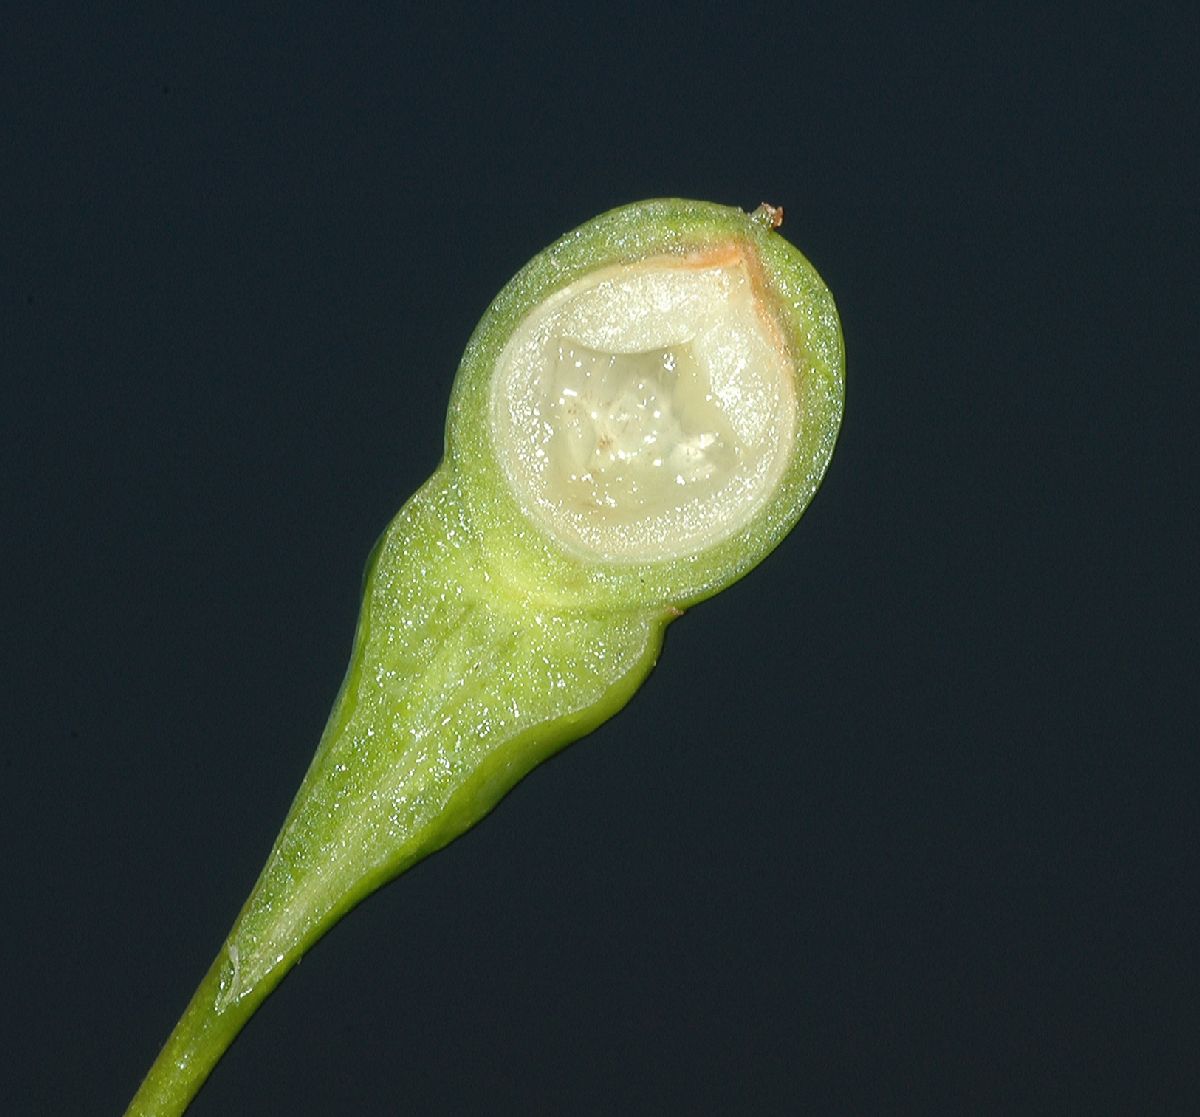 Lauraceae Sassafras albidum